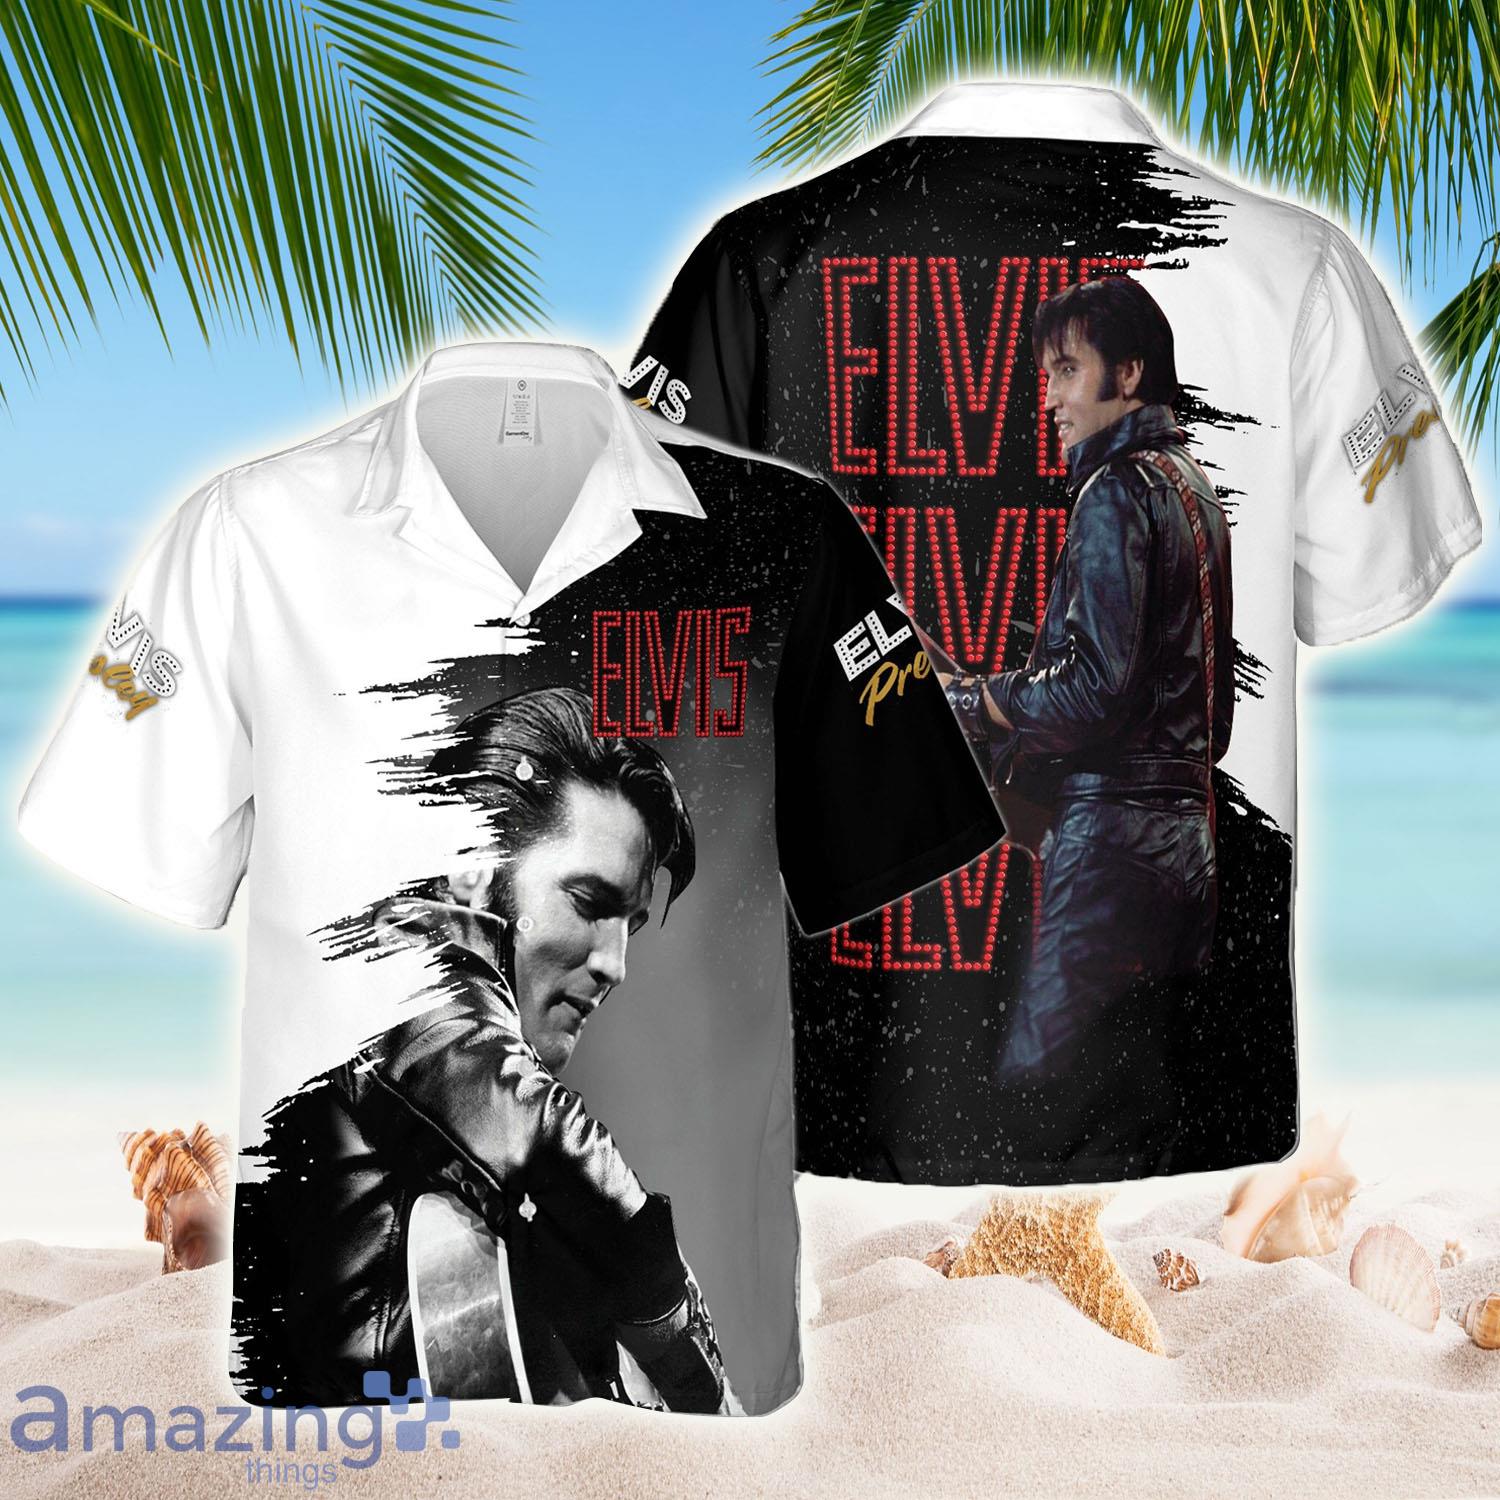 The King Of Rock’n Roll Elvis Presley Hawaiian Shirt - The King Of Rock’n Roll Elvis Presley Hawaiian Shirt